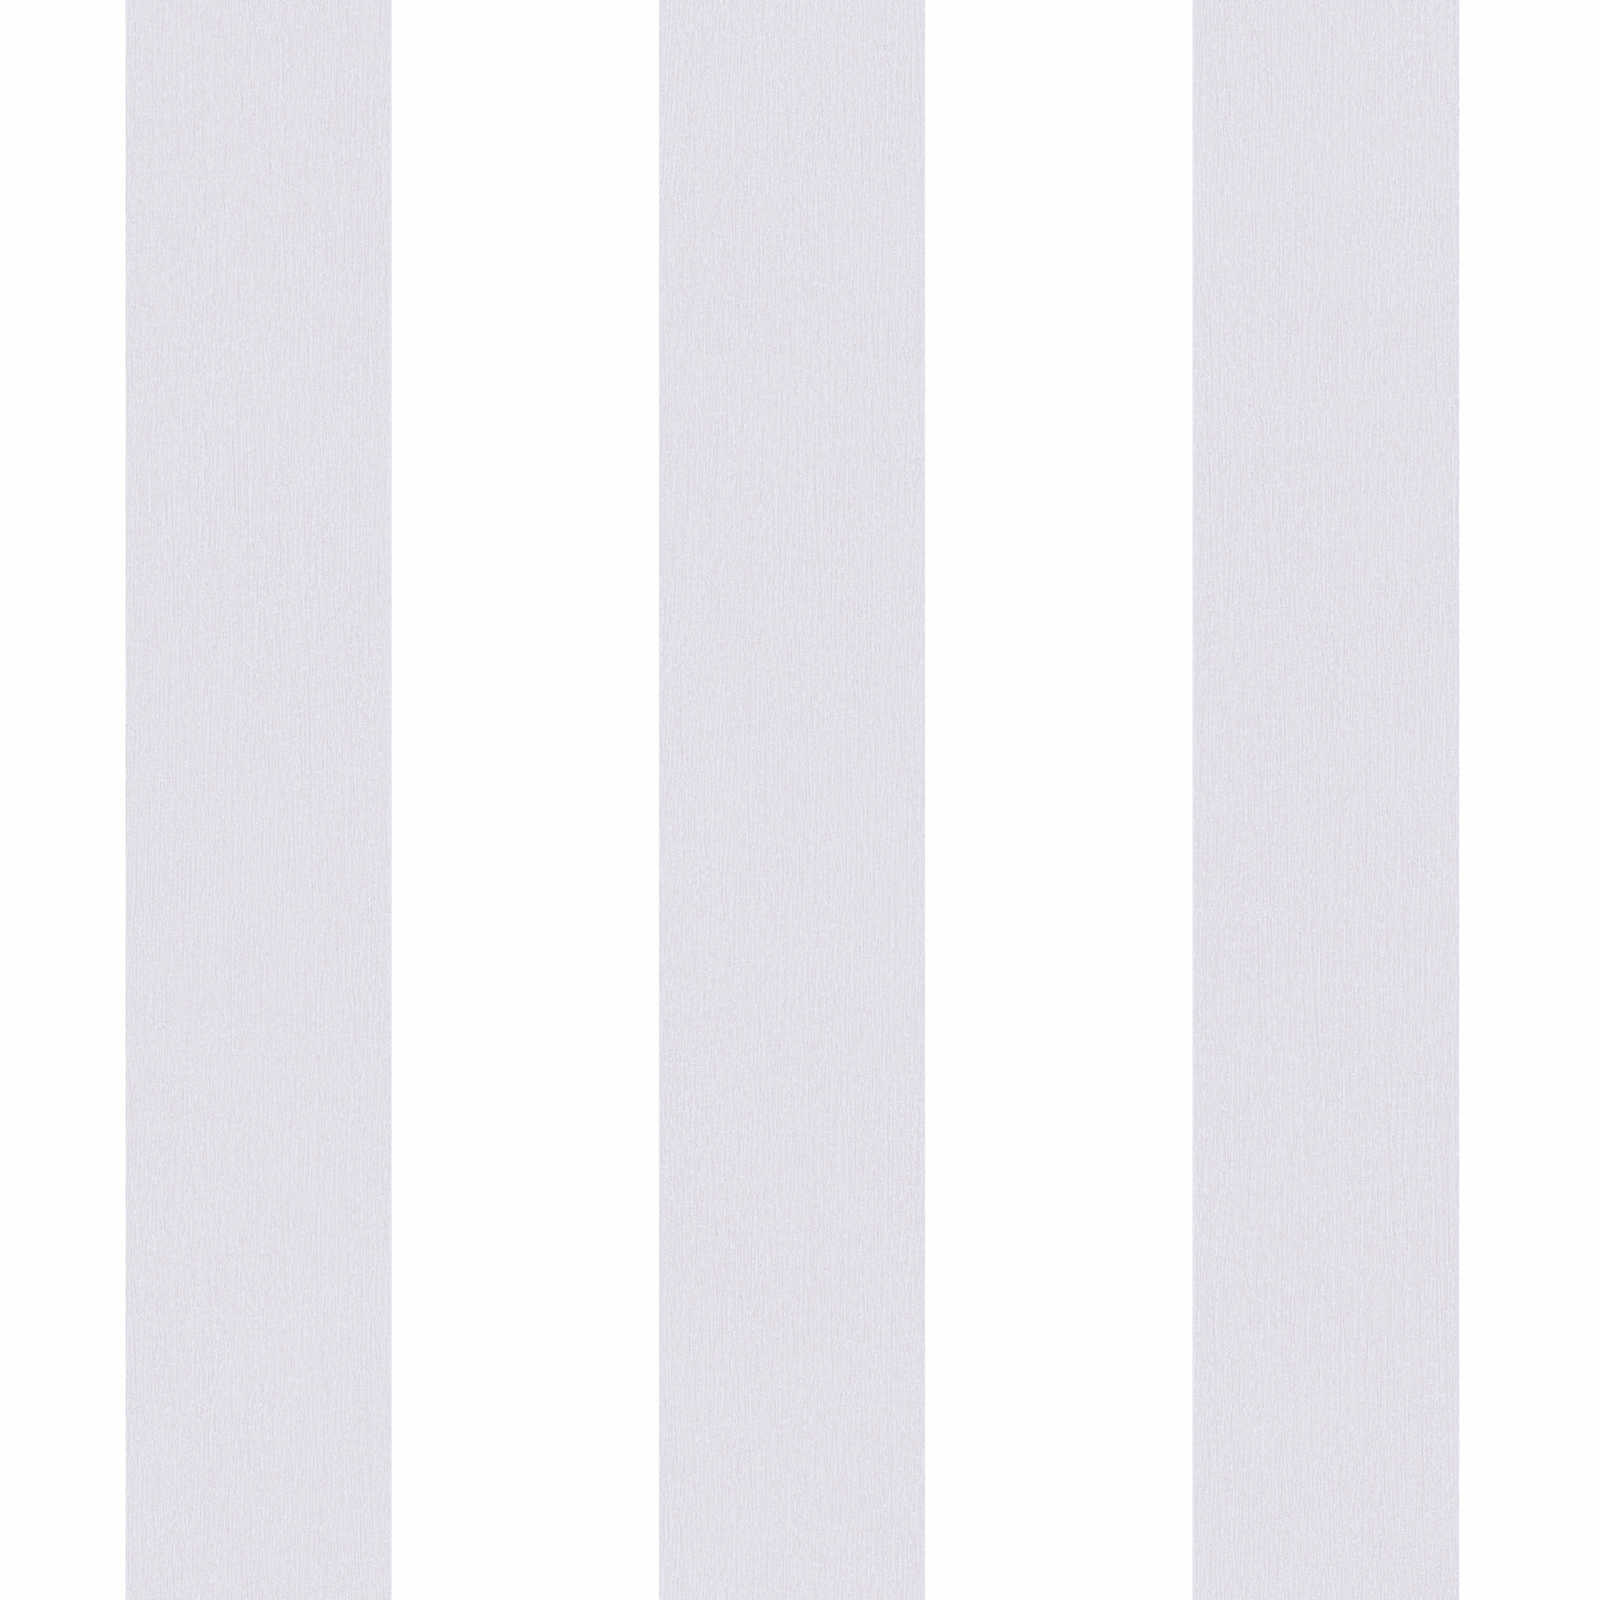 Carta da parati per cameretta a righe verticali - grigio, bianco
